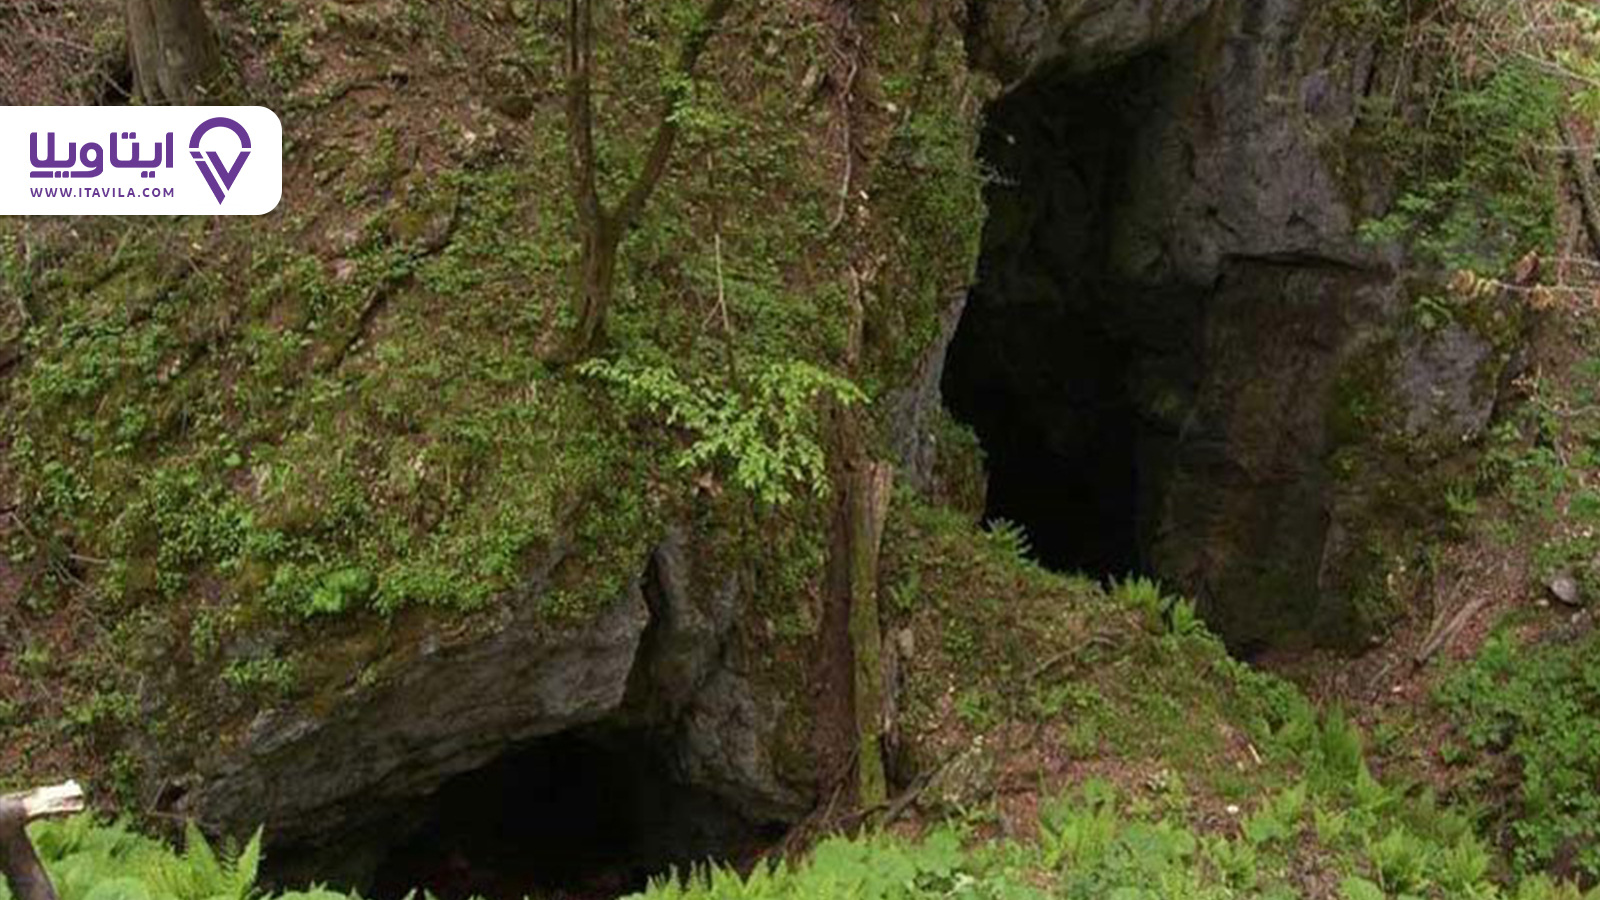 غار آویشو ماسال غاری با قدمت ۷۵ میلیون سال در گیلان